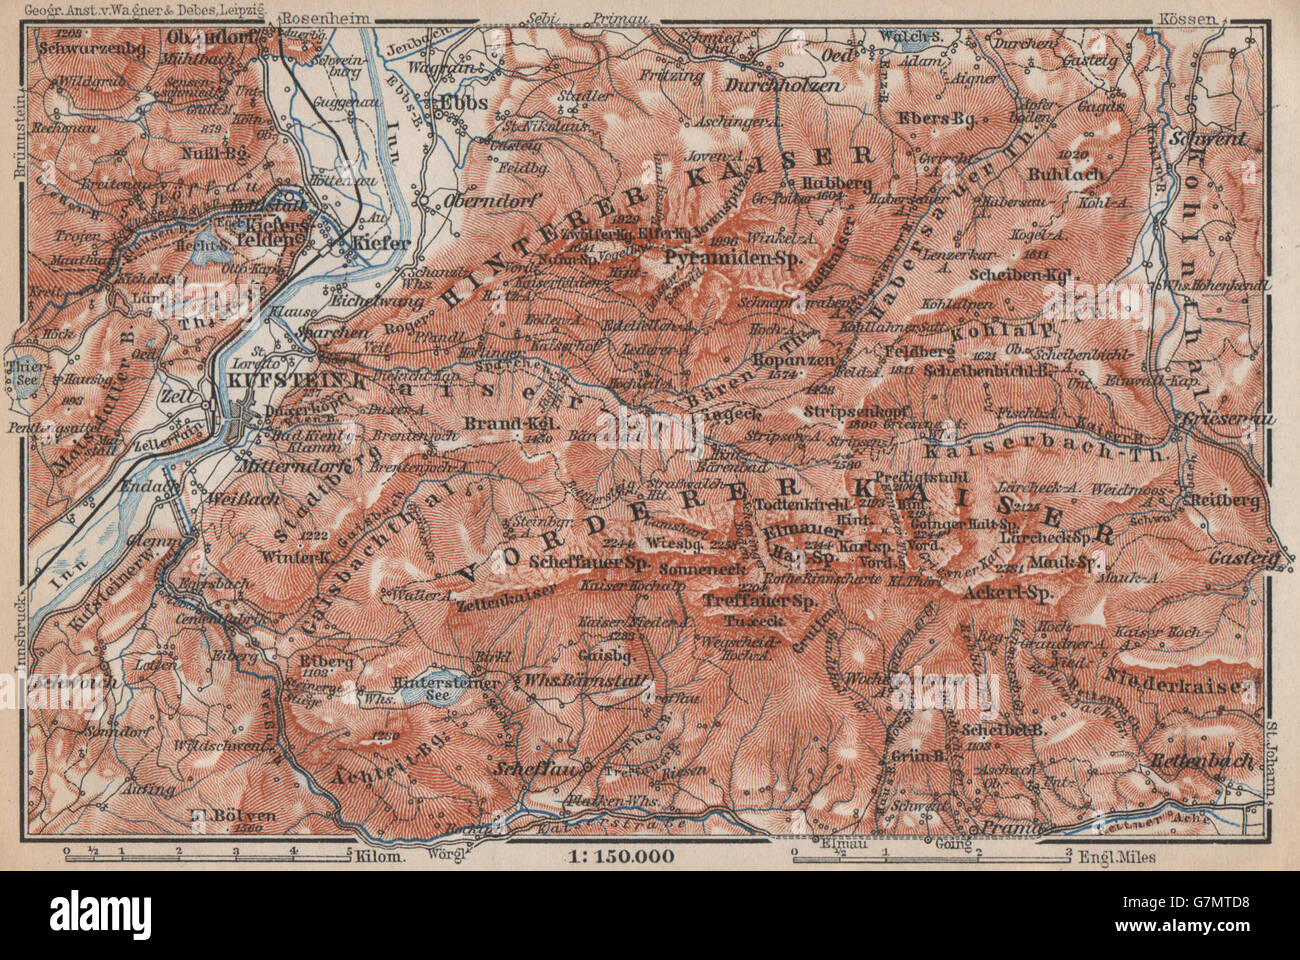 KUFSTEIN alrededores. Kaisergebirge. Wilder Kaiser/Zahmer Tirol Tirol, 1899 mapa Foto de stock